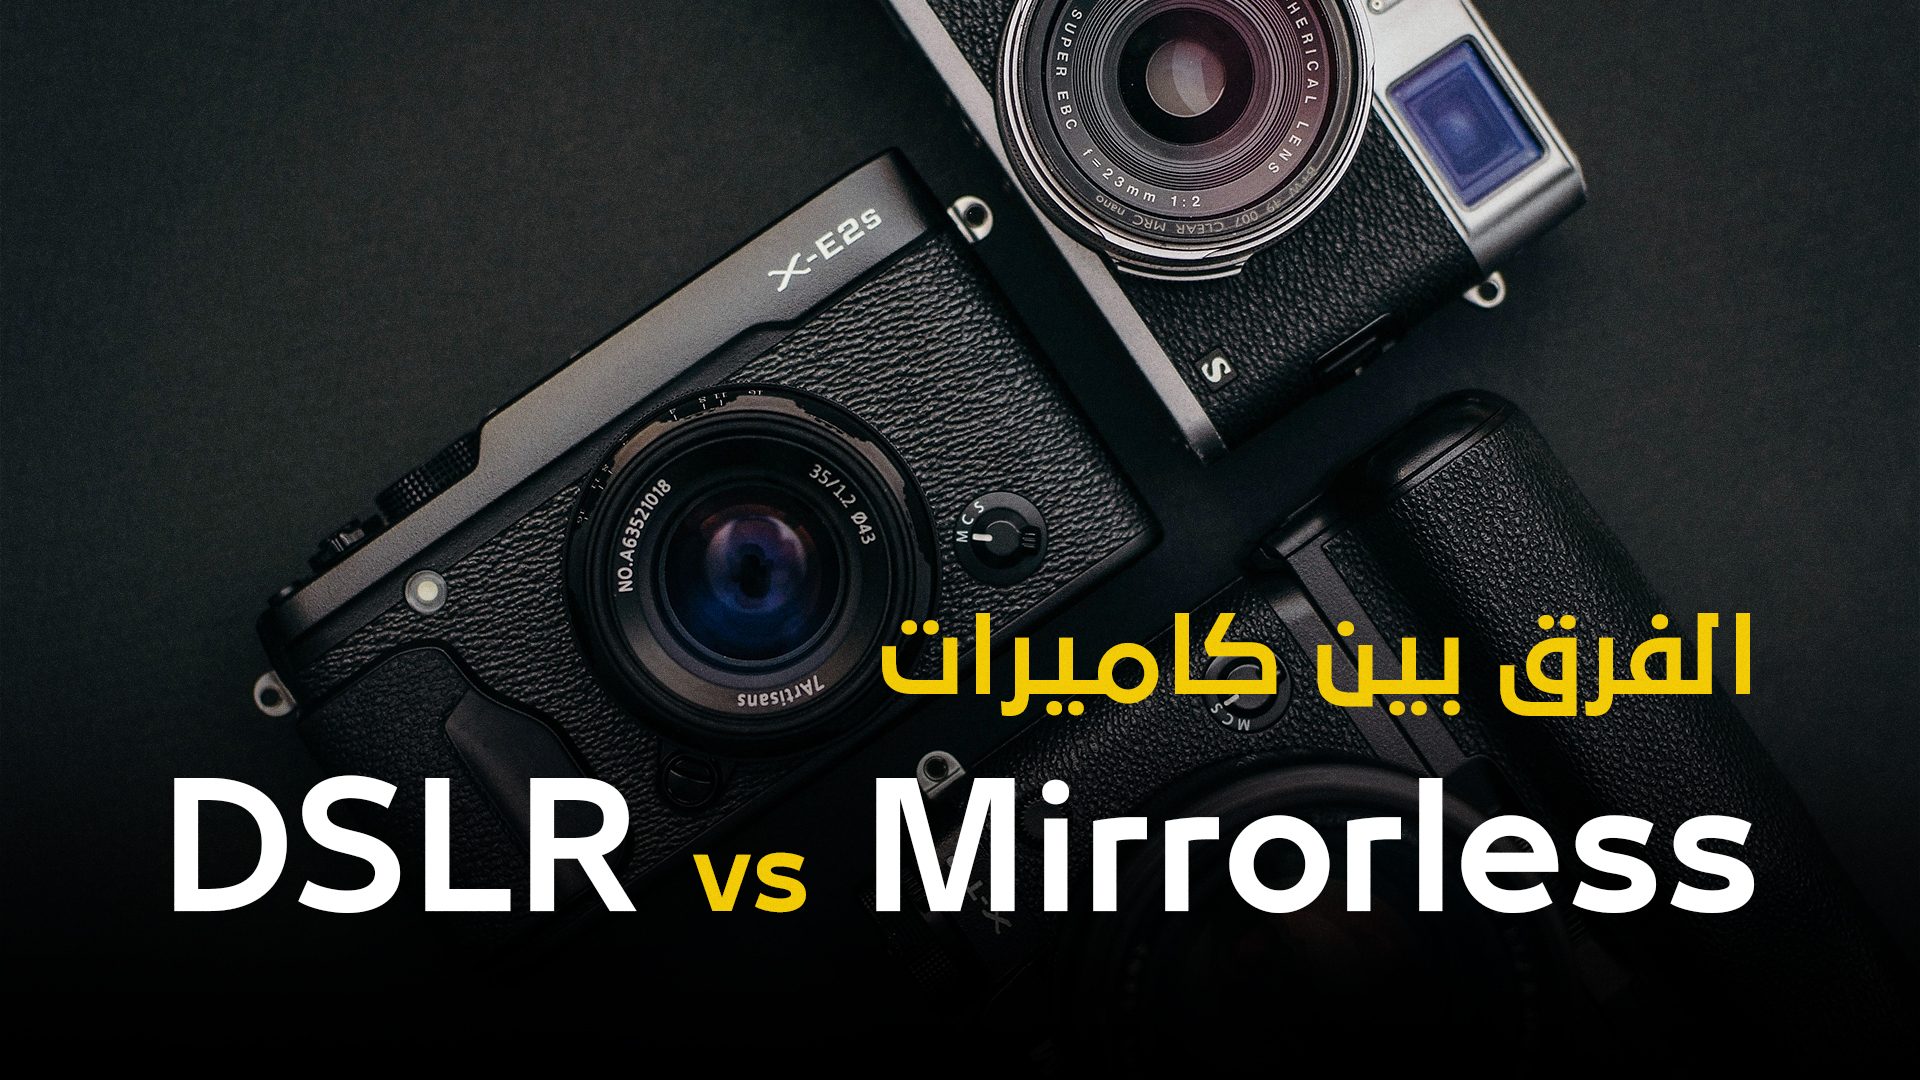 ماهو الفرق بين كاميرات Mirrorless وكاميرات DSLR